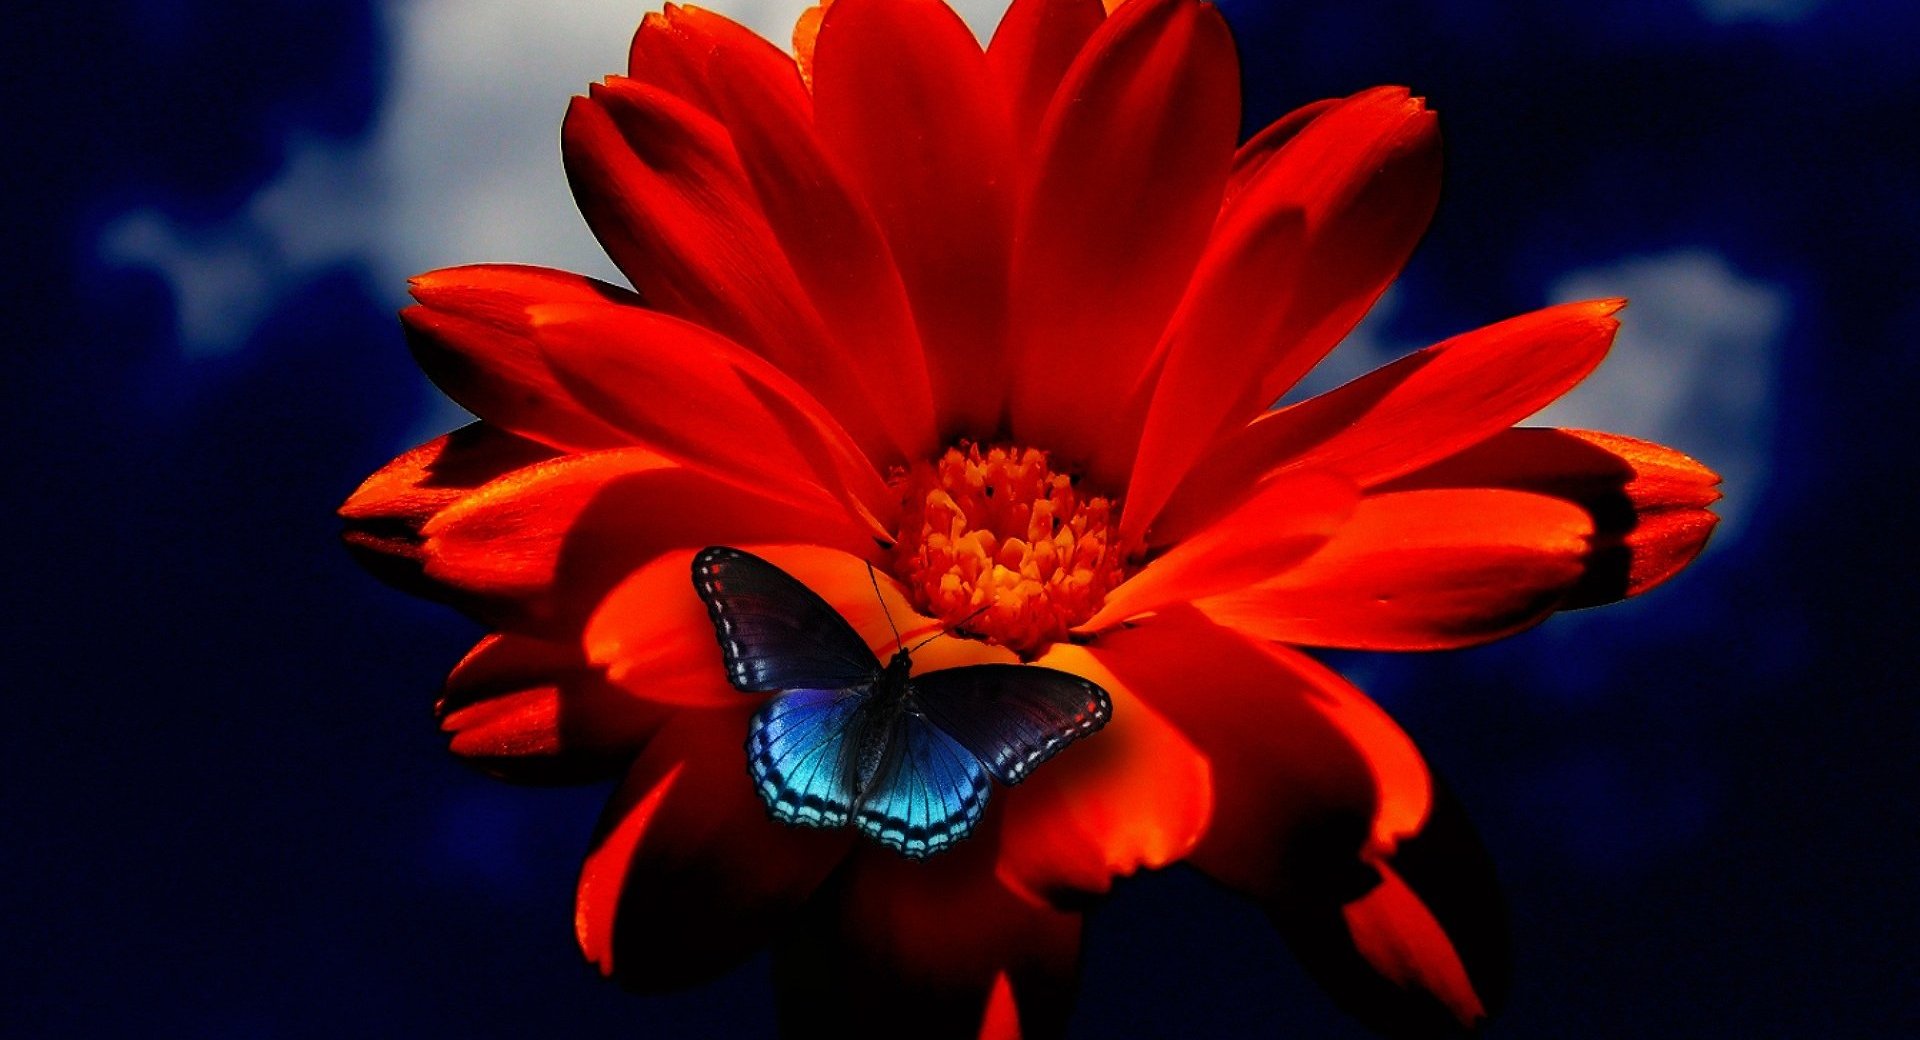 Скачать обои бесплатно Цветок, Красный, Синий, Бабочка, Земля/природа, Флауэрсы картинка на рабочий стол ПК